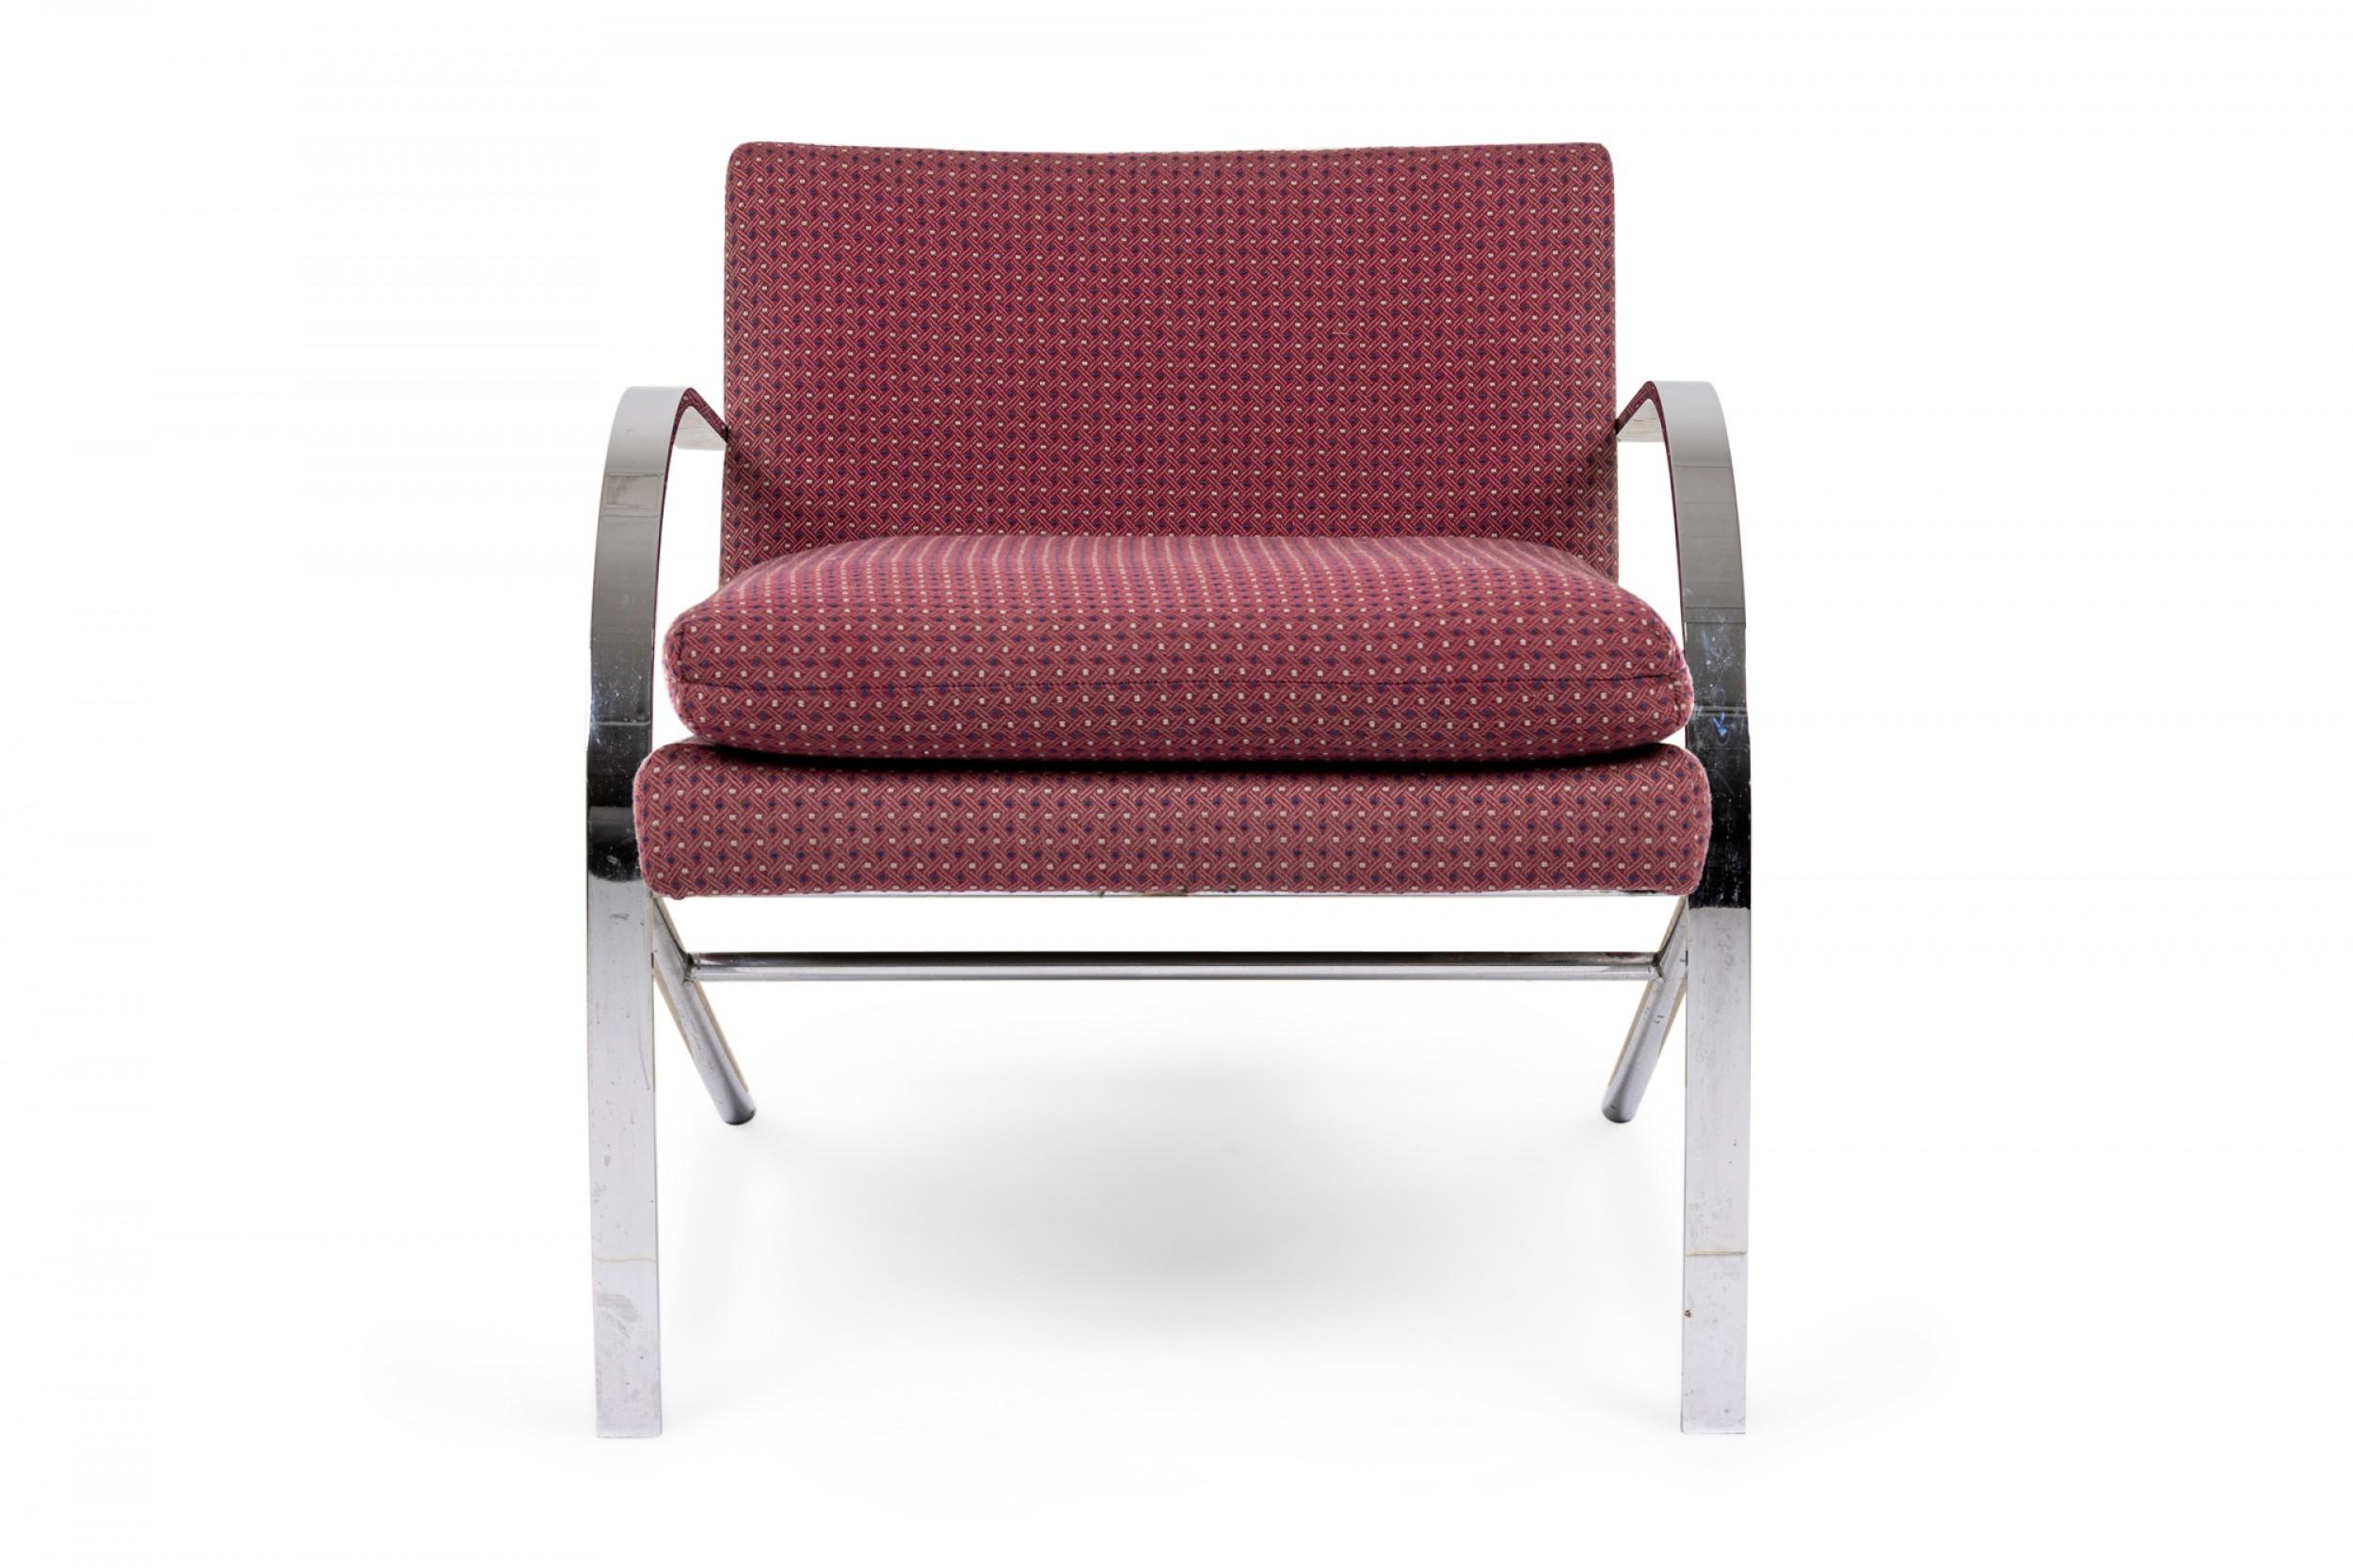 Salon/fauteuil américain du milieu du siècle de forme 'Arco' avec revêtement rouge sourd à motif géométrique de points bleu marine et beige et coussin d'assise amovible, soutenu par un cadre chromé composé de deux poutres arquées qui créent à la